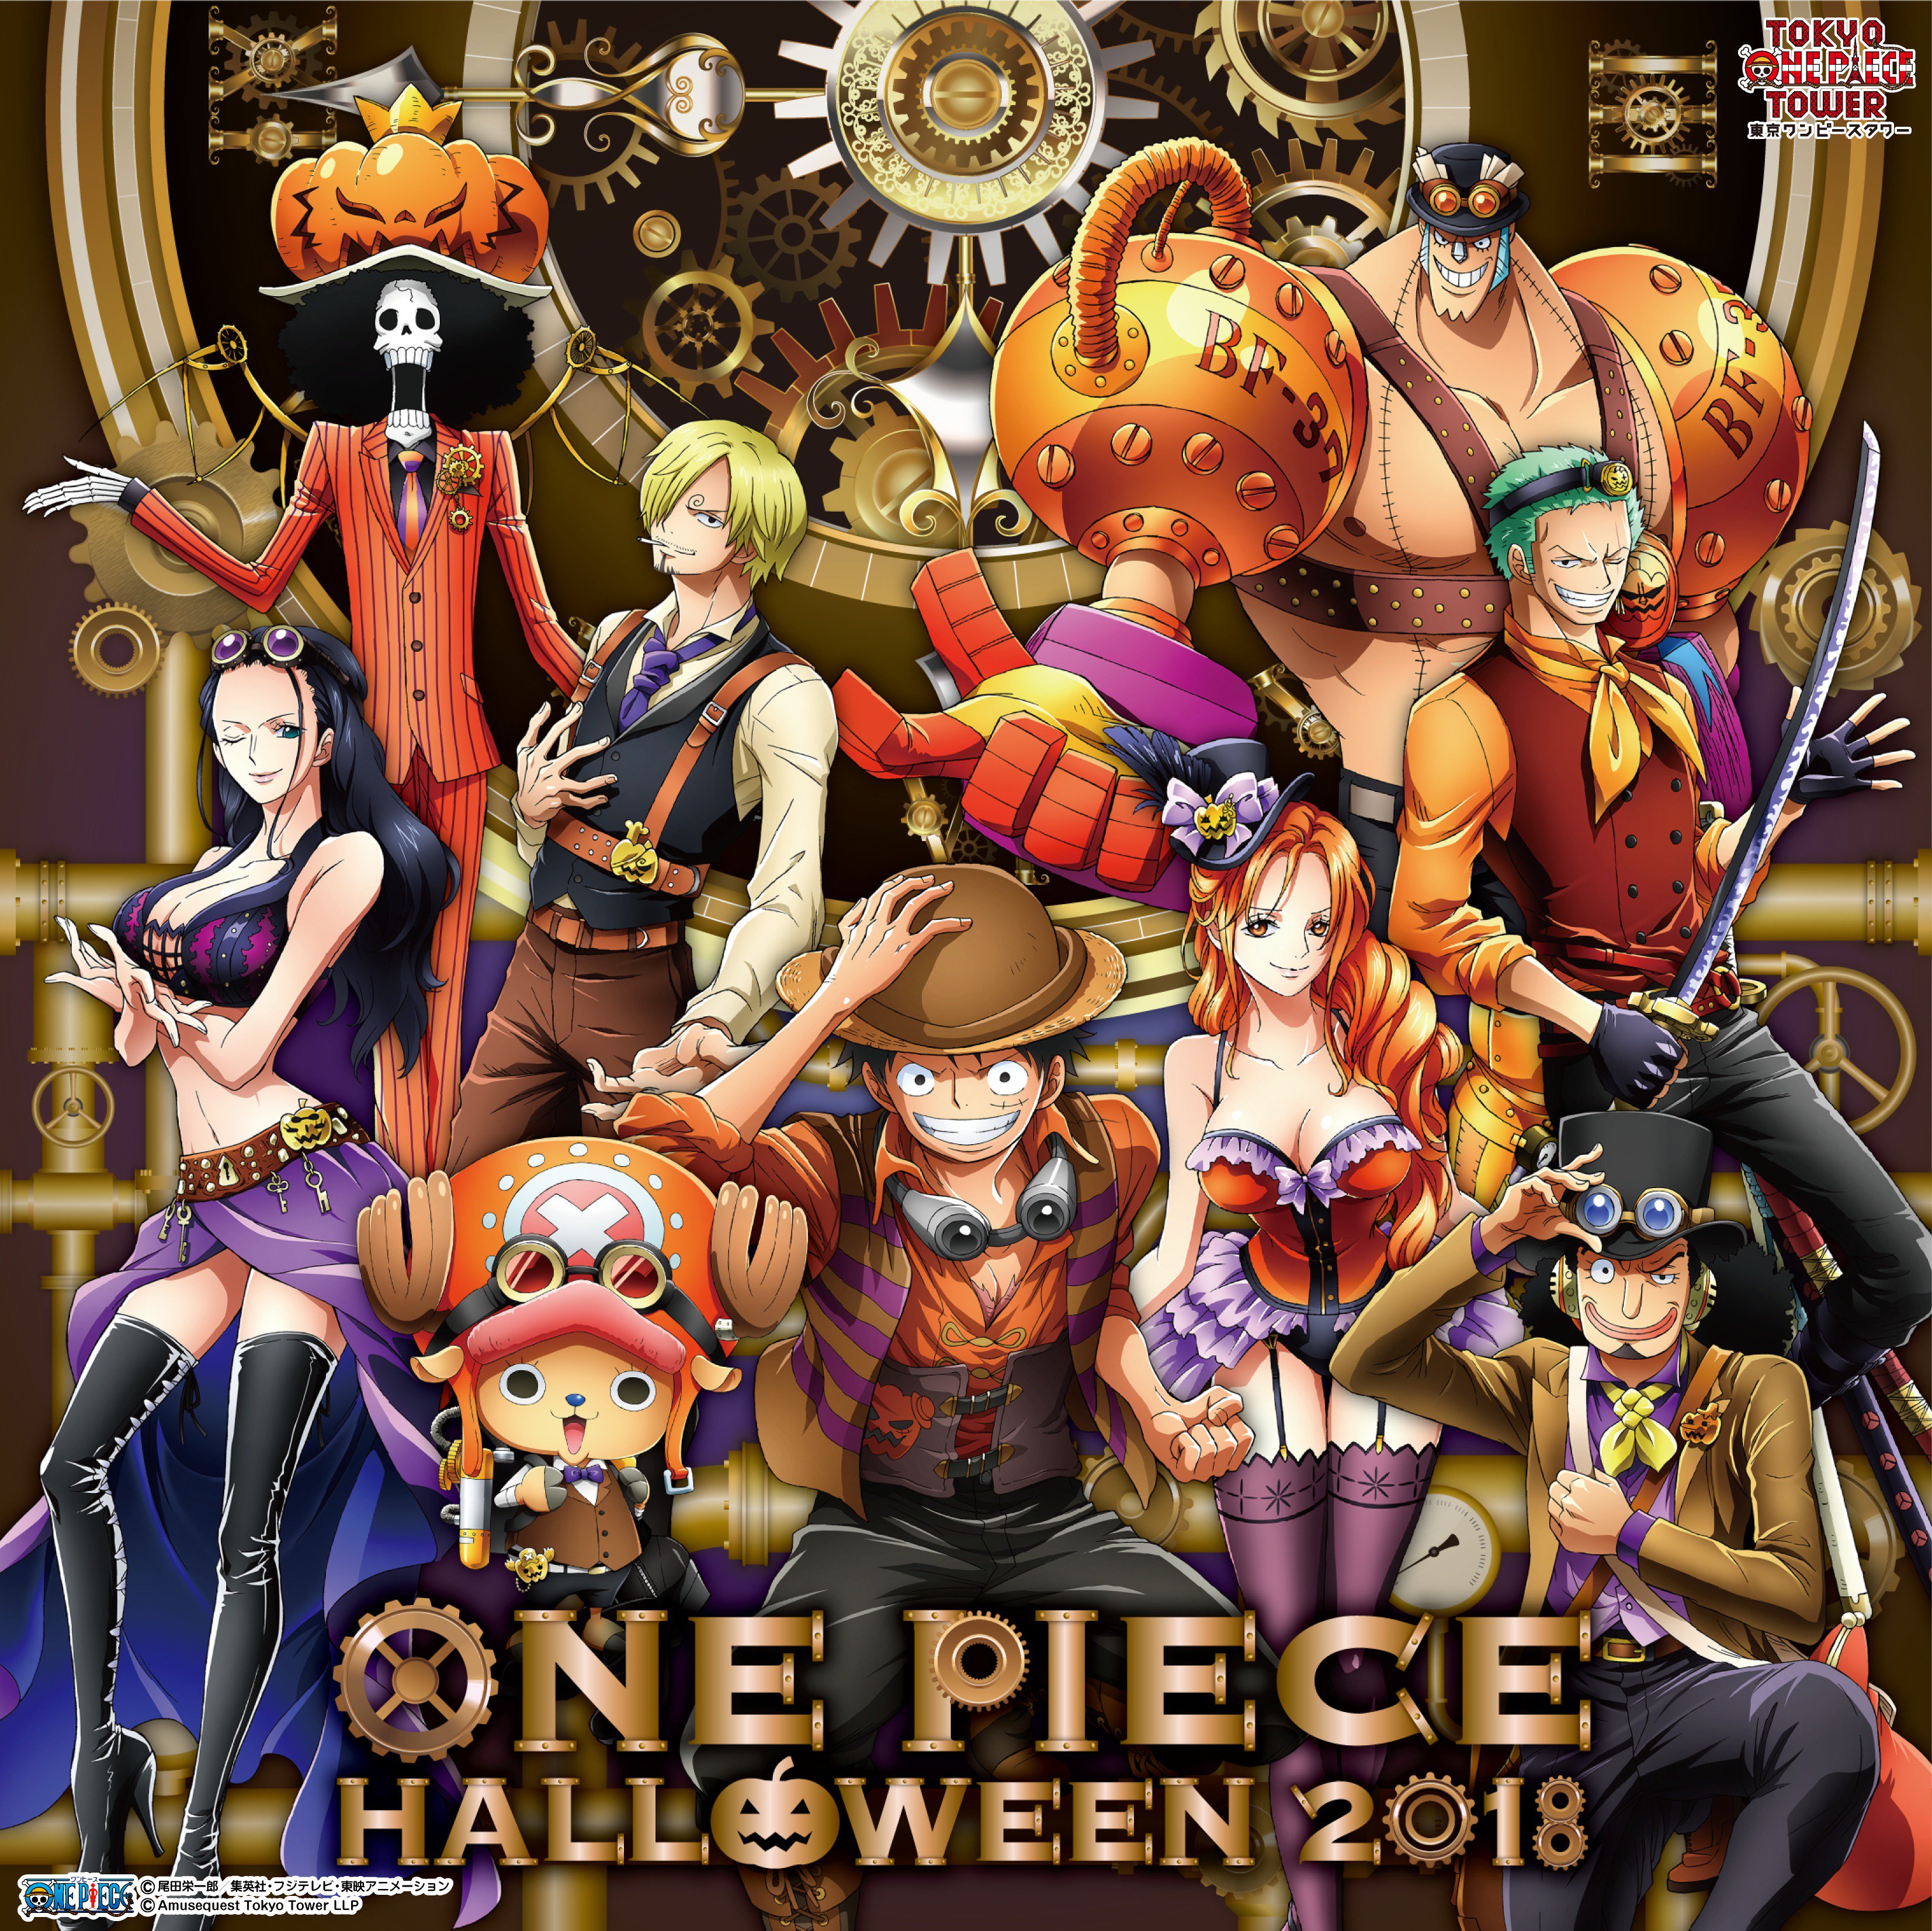 東京ワンピースタワー 公式 ついに One Piece Halloween 18 特設サイトがオープン T Co Hywidgqfsk One Piece キャラクターになりきって 東京ワンピースタワー を楽しもう さらに なりきり をしている方にはオリジナル